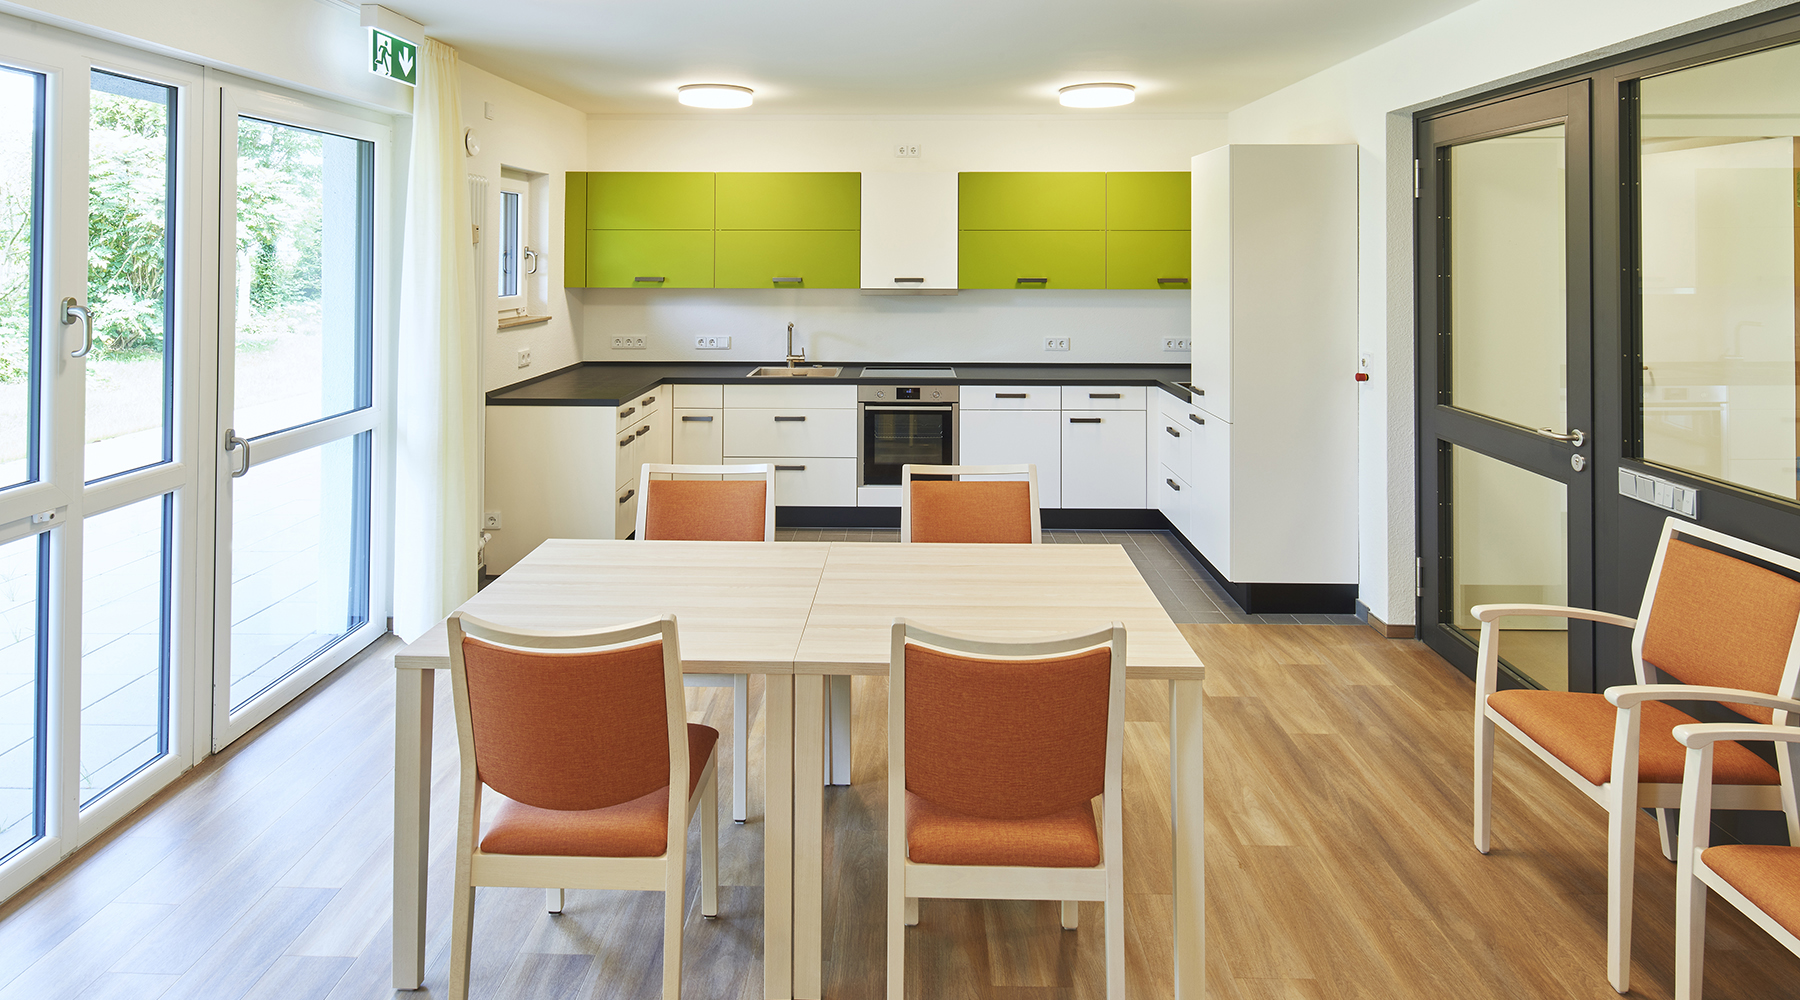 Holztisch mit braun-bezogenen Stühlen steht in der Mitte des Raumes. Im Hintergrund ist eine weiße Küche mit schwarzer Arbeitsplatte und grünen Hängeschränken.